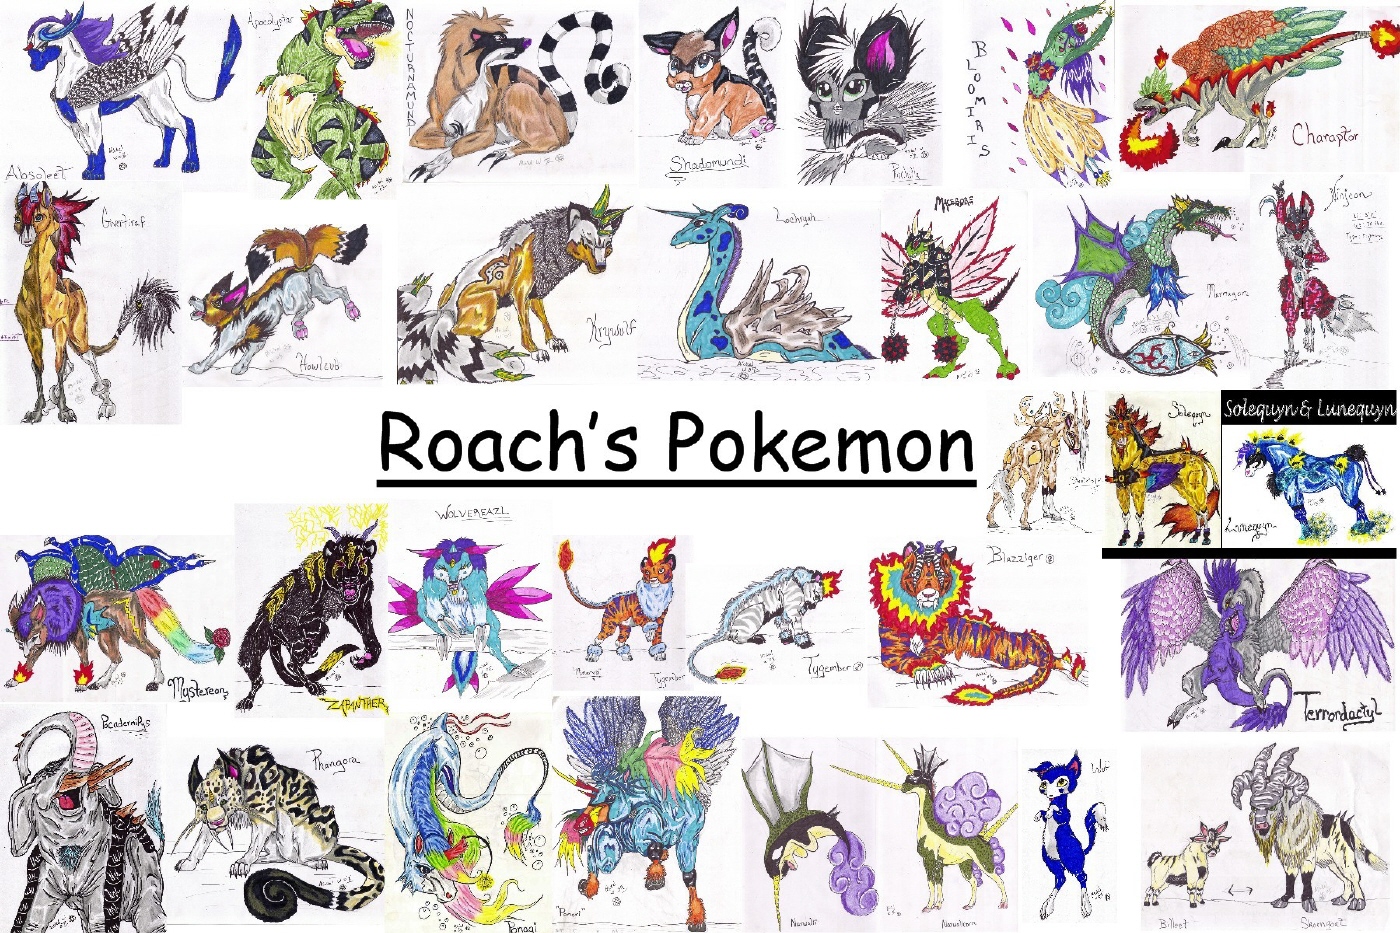 Roach's Pokemon Vol. 1 by rolla_roach